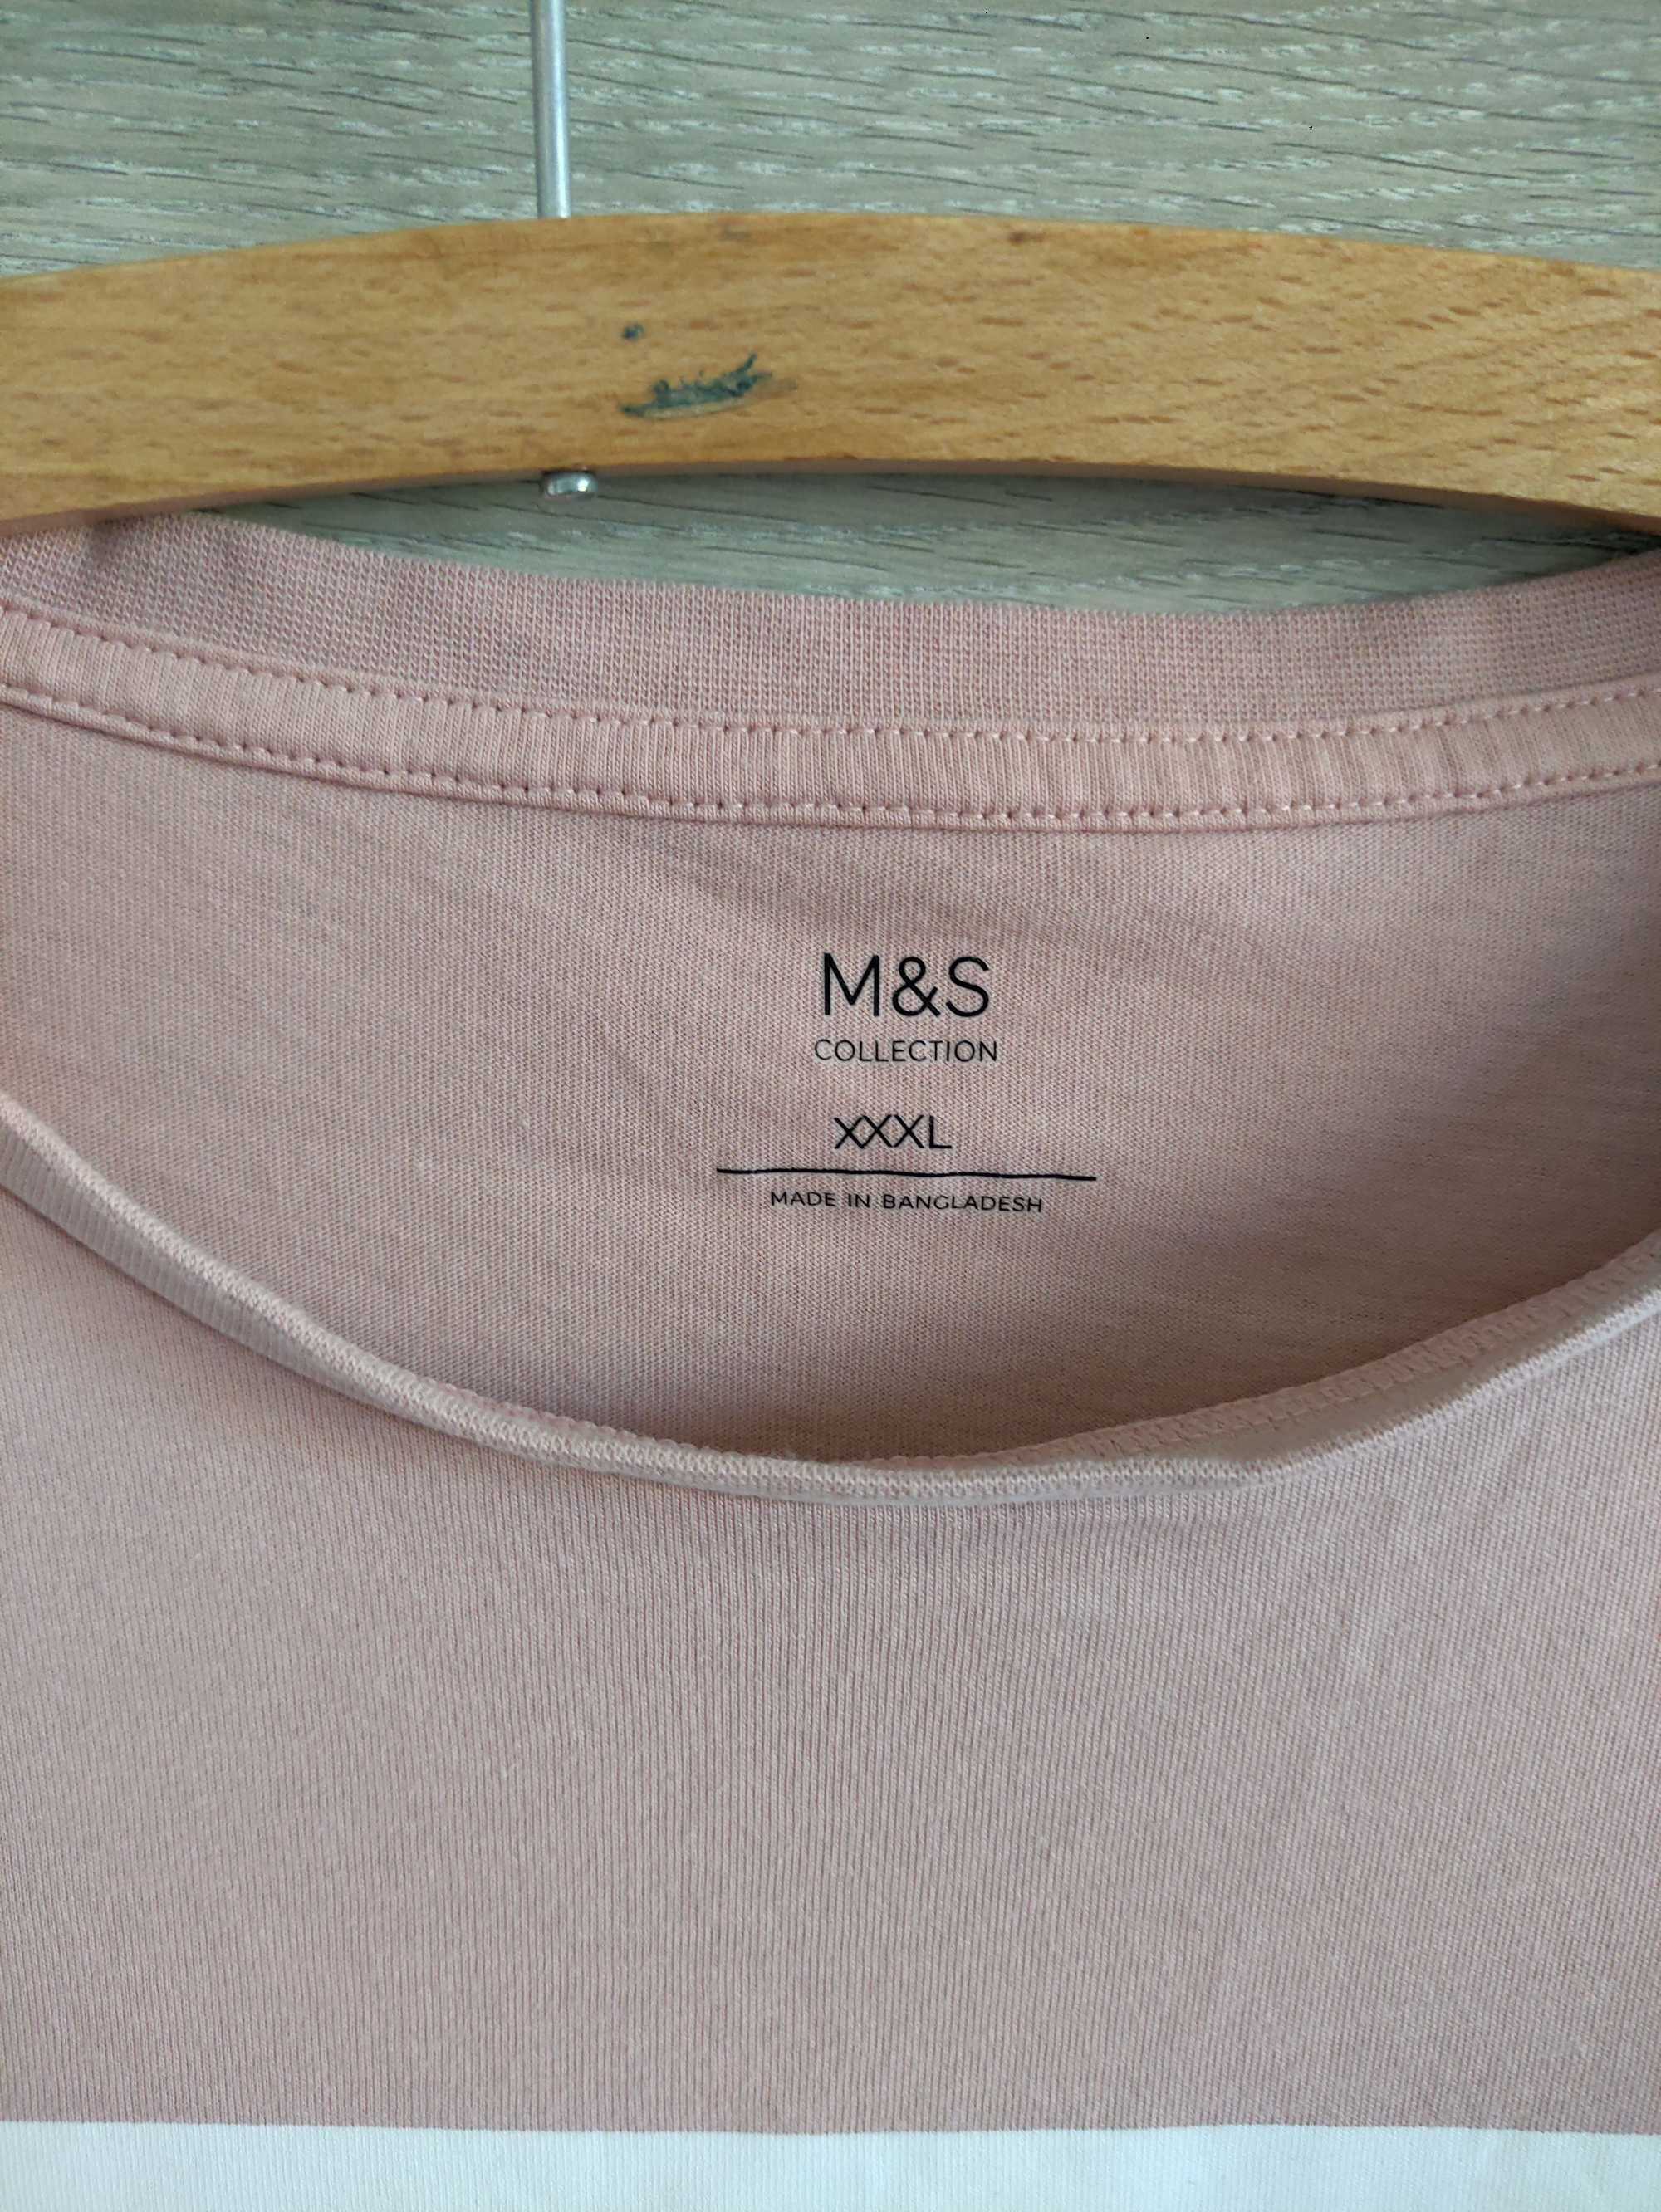 T-shirt M&S 3XL nowa